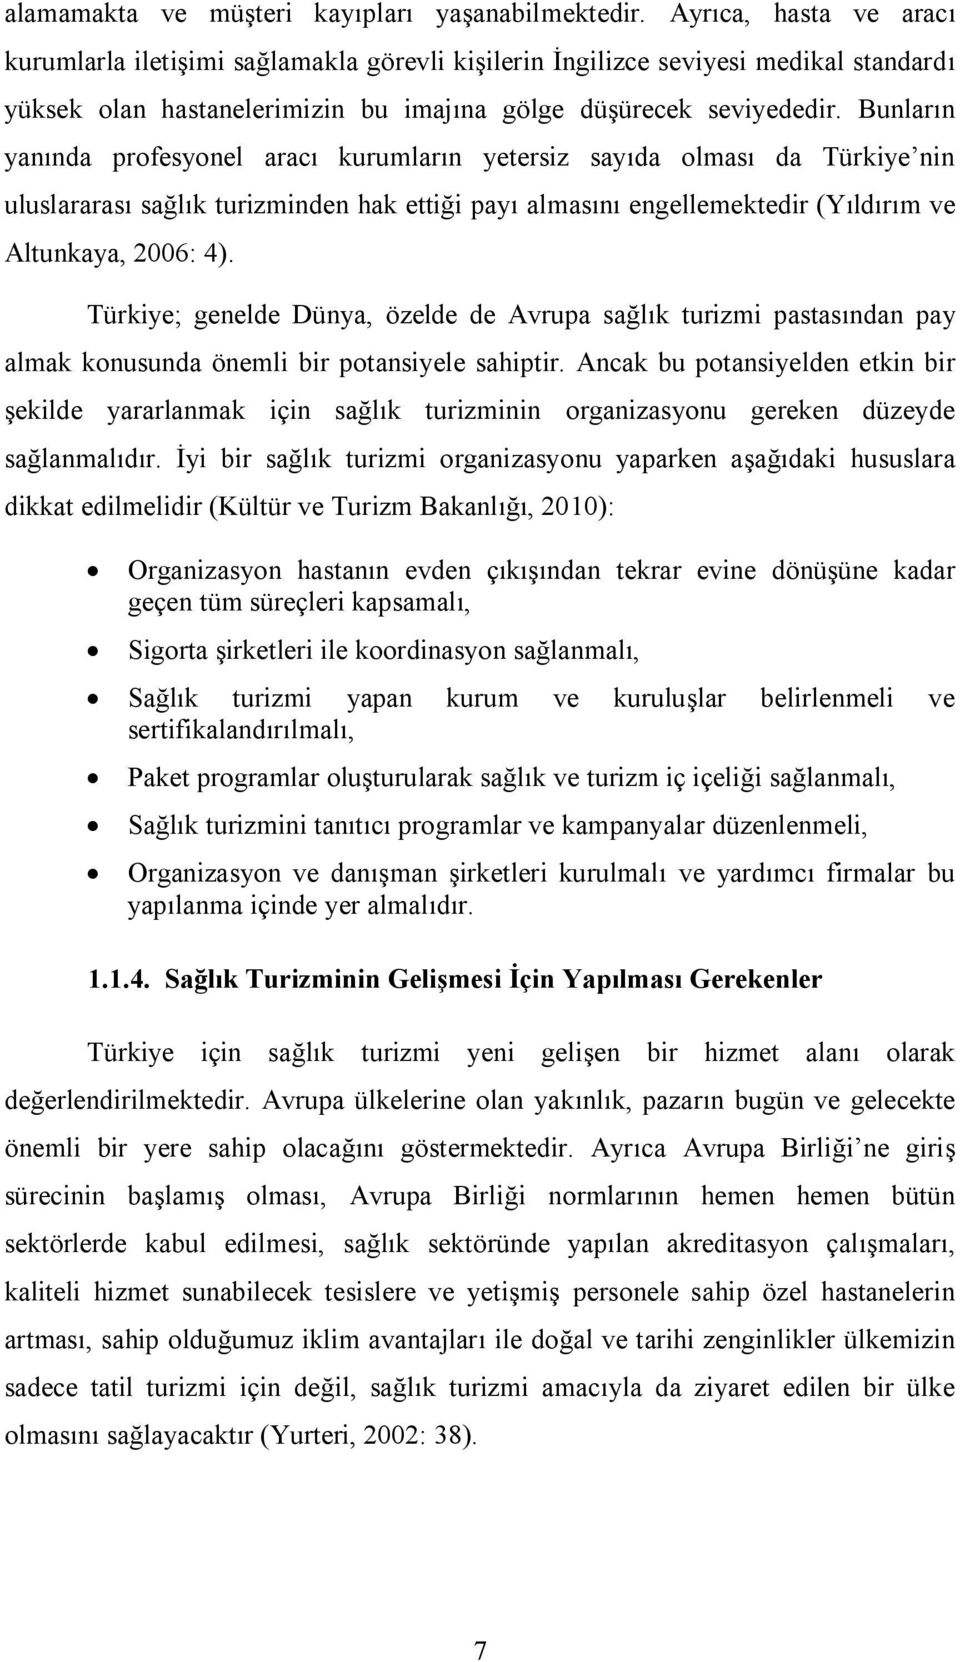 Bunların yanında profesyonel aracı kurumların yetersiz sayıda olması da Türkiye nin uluslararası sağlık turizminden hak ettiği payı almasını engellemektedir (Yıldırım ve Altunkaya, 2006: 4).